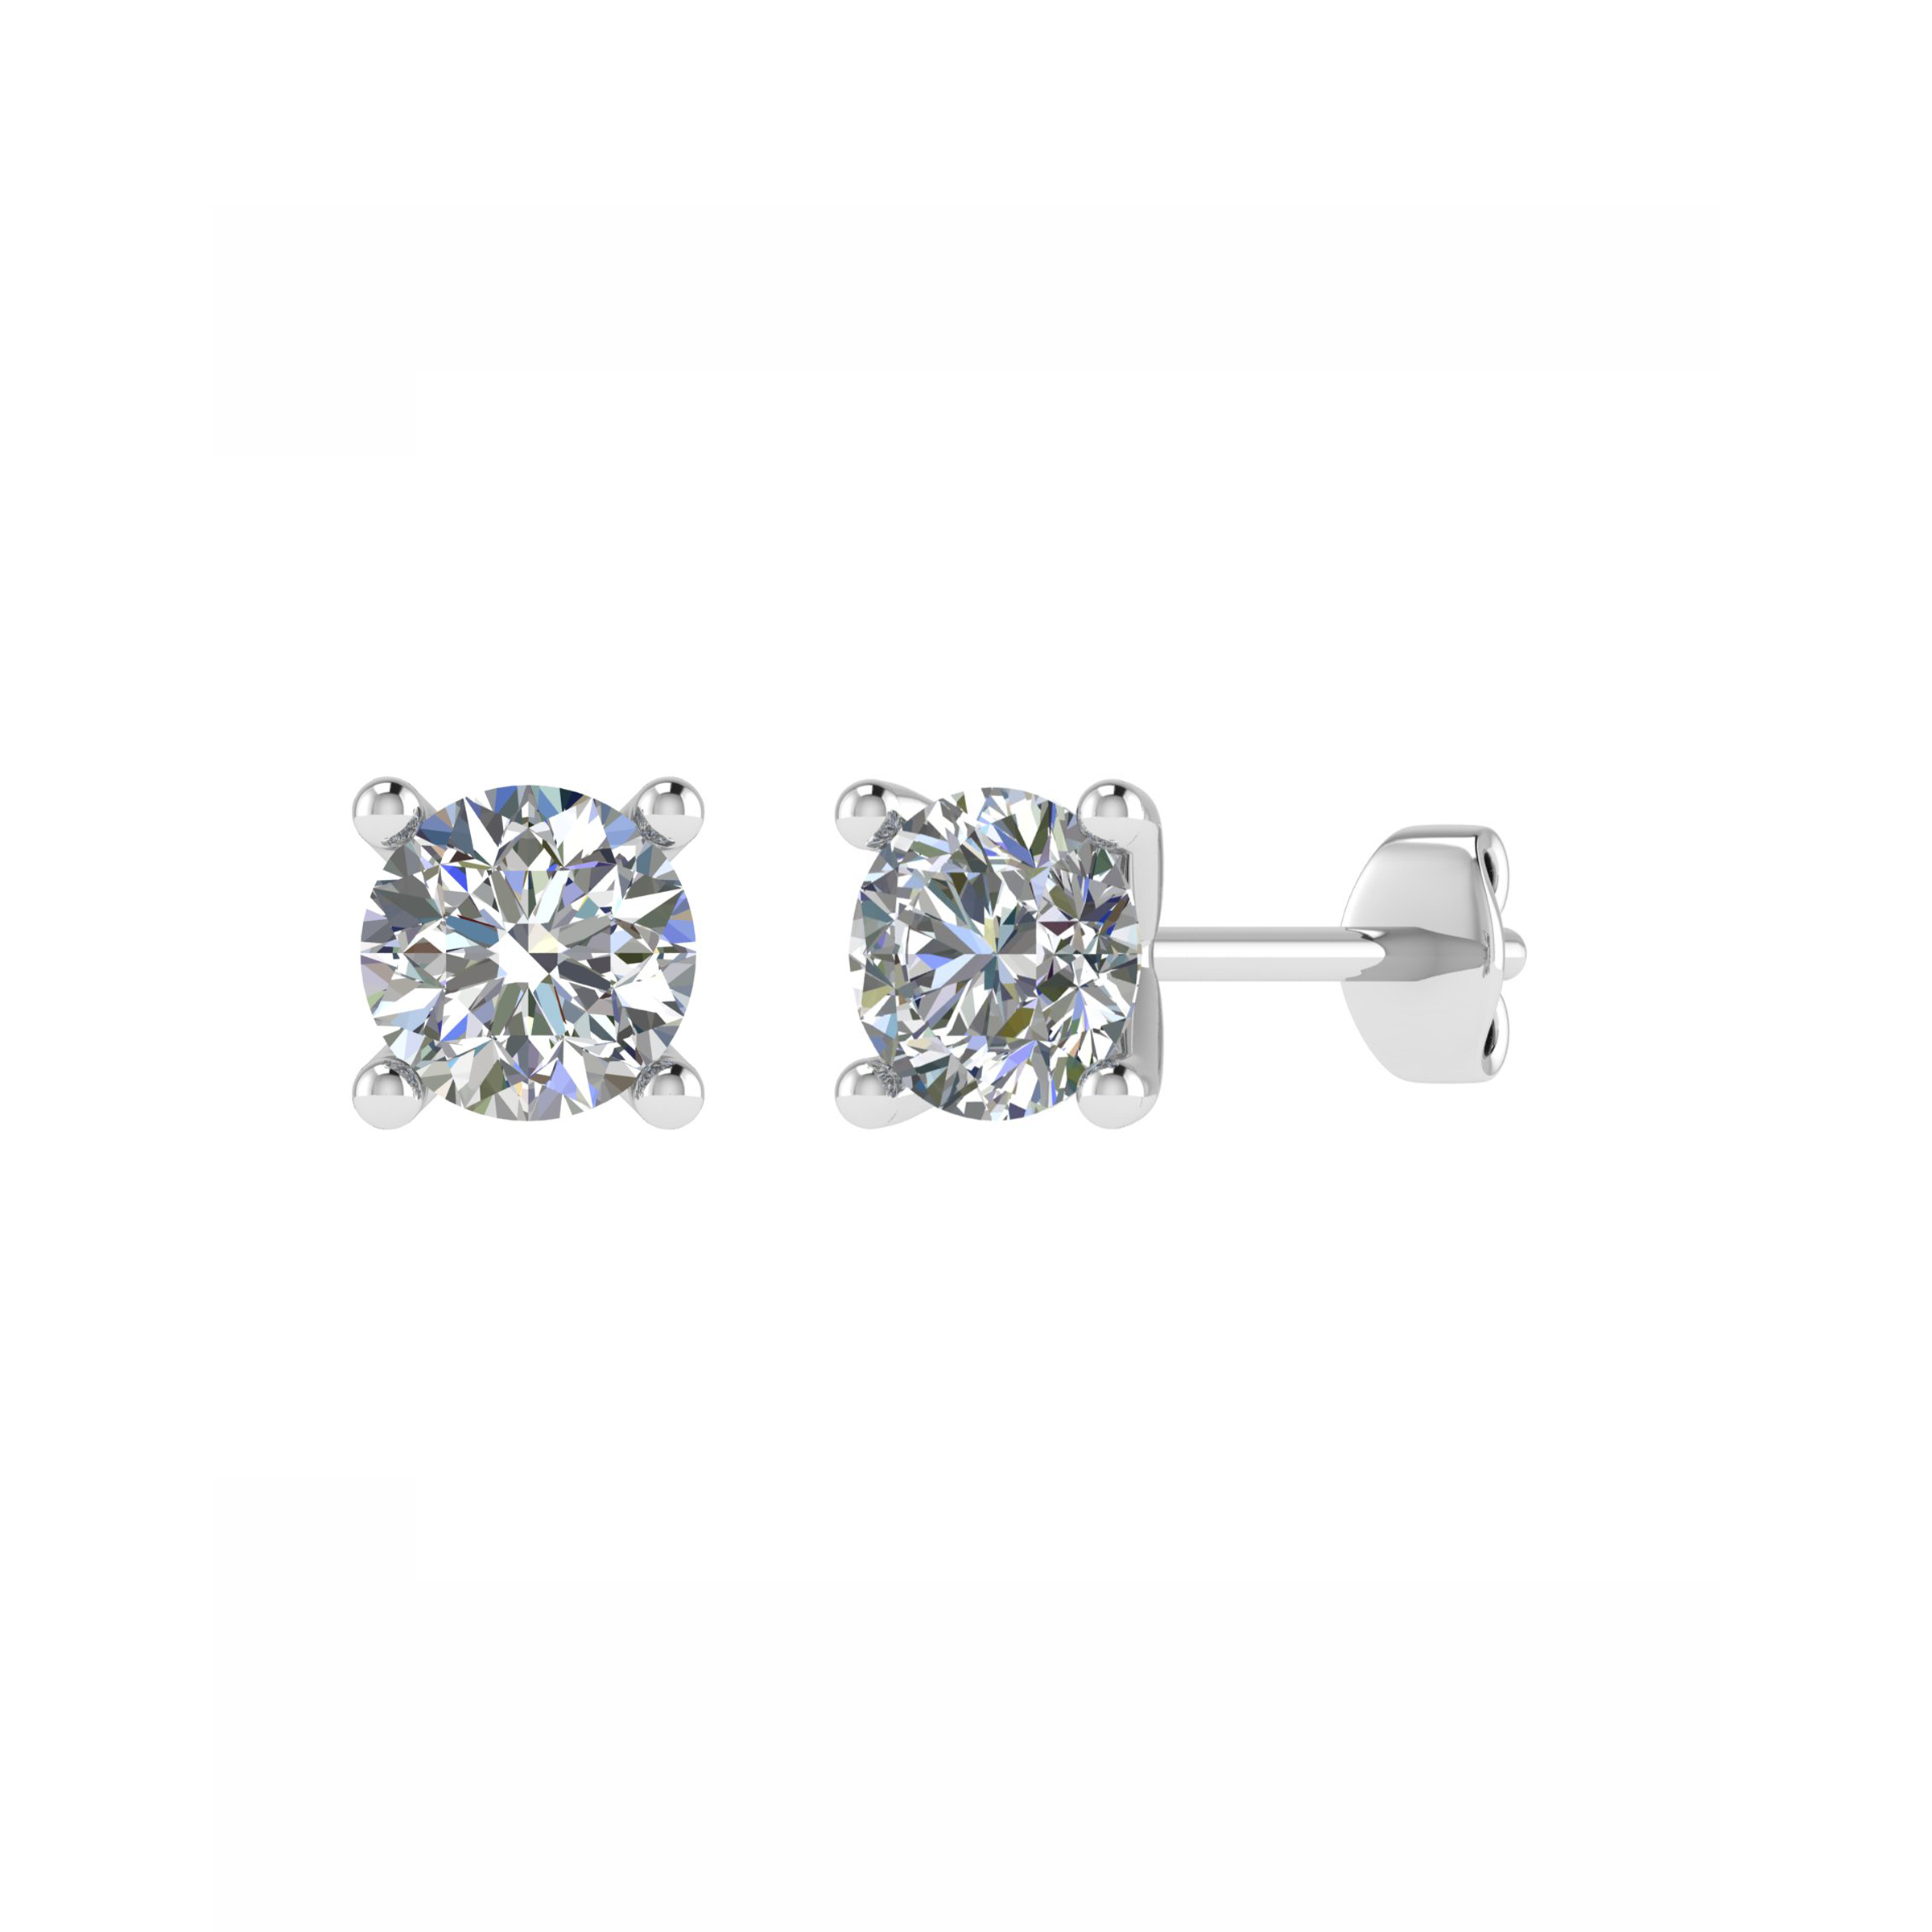 Plain Earrings, Diamond Earrings, Wedding Earrings, Engagement Earrings, Engagement Wedding Earrings, Engagement Diamond Earrings, Diamond Wedding Earrings